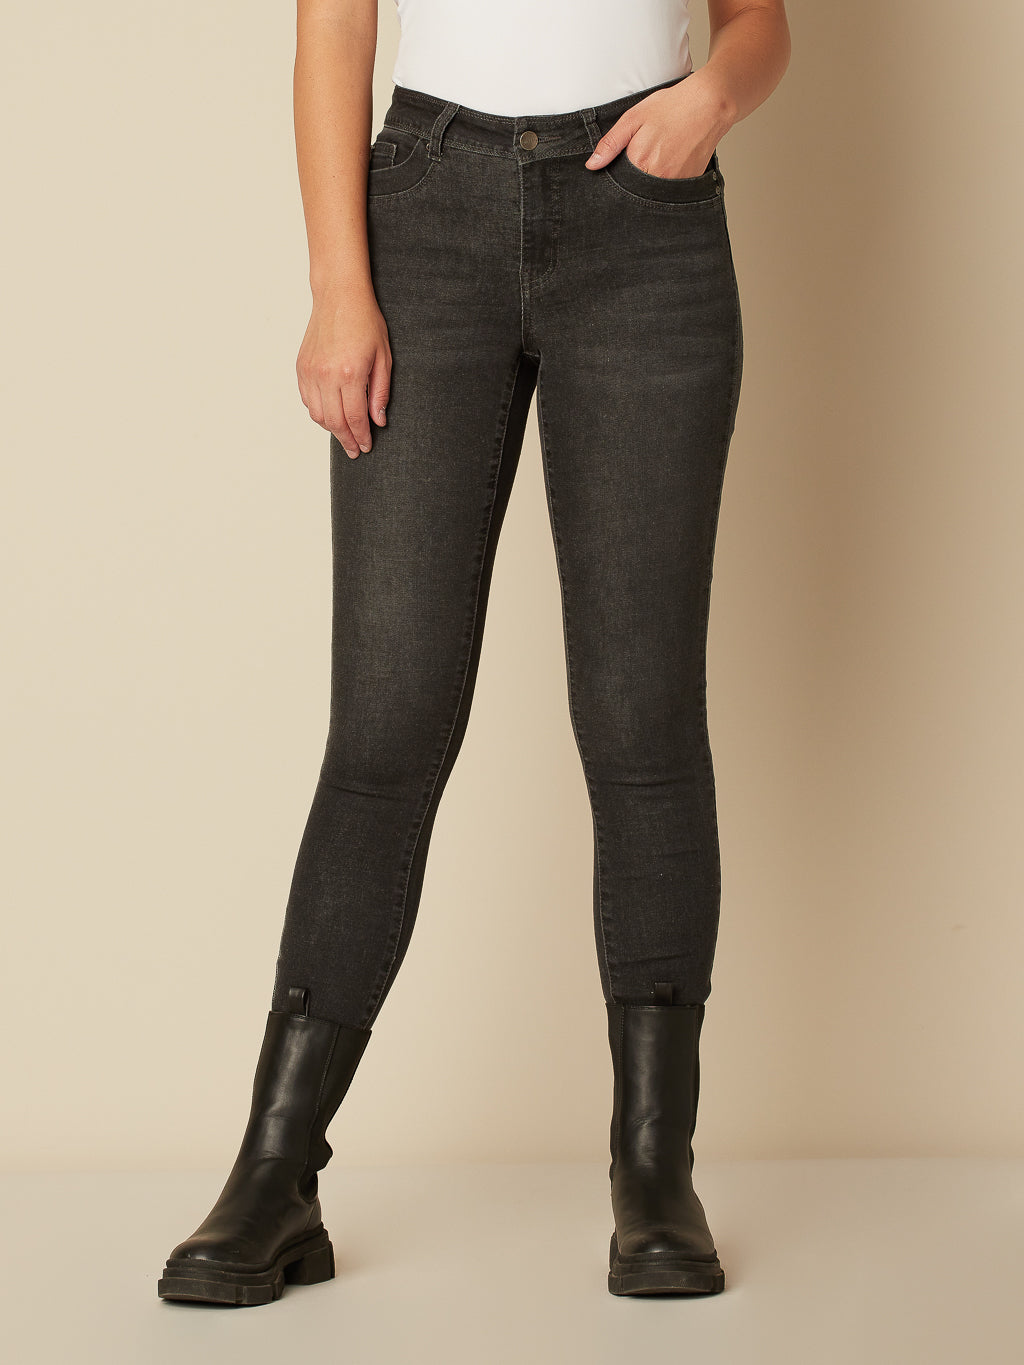 Vestes en jean : notre sélection shopping printemps-été 2023 - Marie Claire